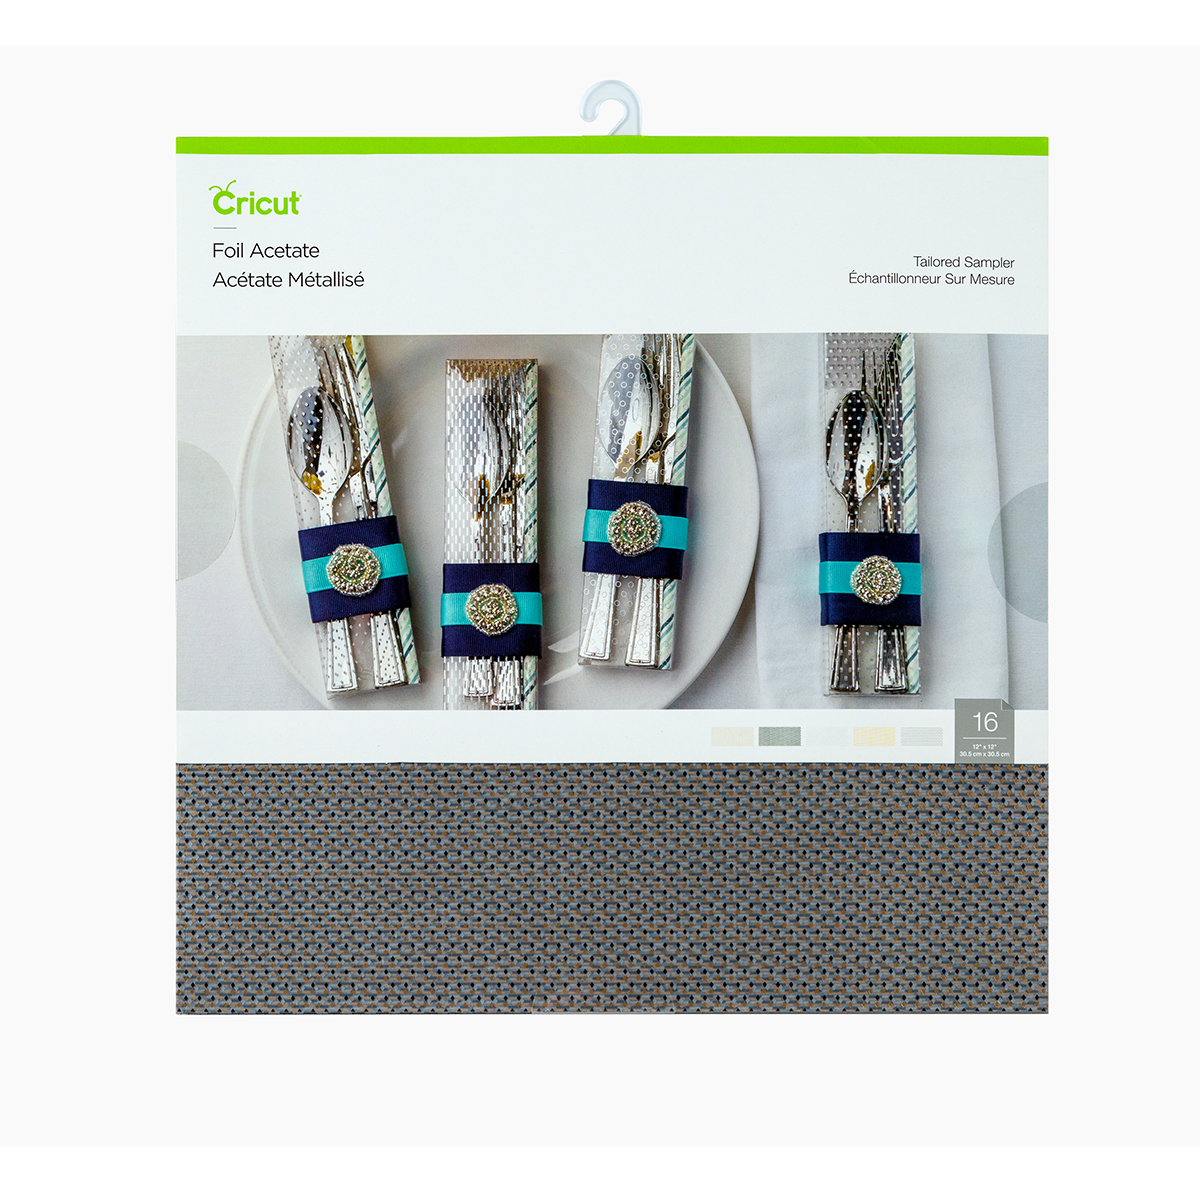 Cricut – Foil Acetate Tailor Sampler 2006310 – 1